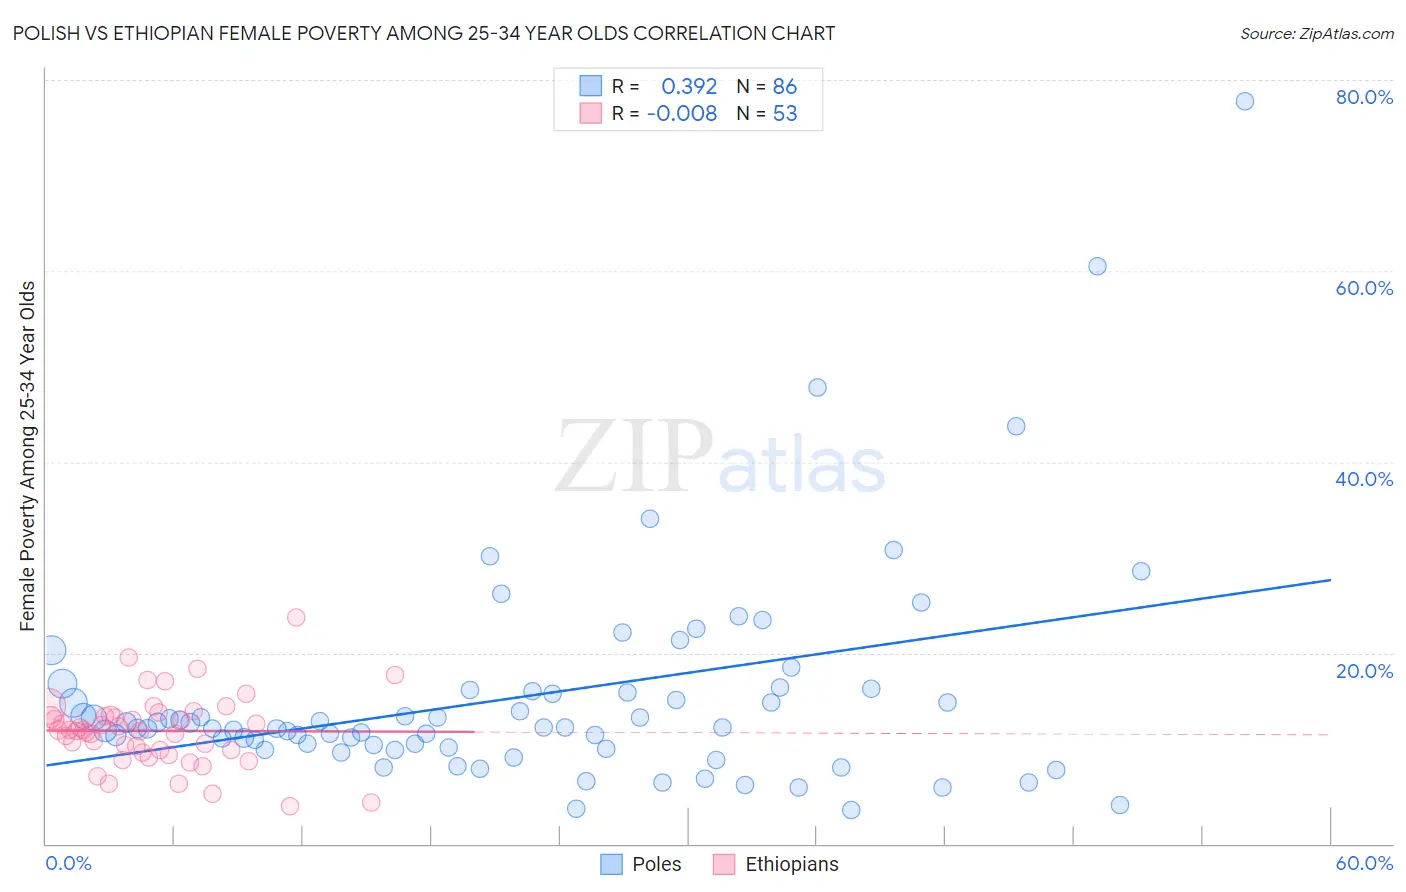 Polish vs Ethiopian Female Poverty Among 25-34 Year Olds